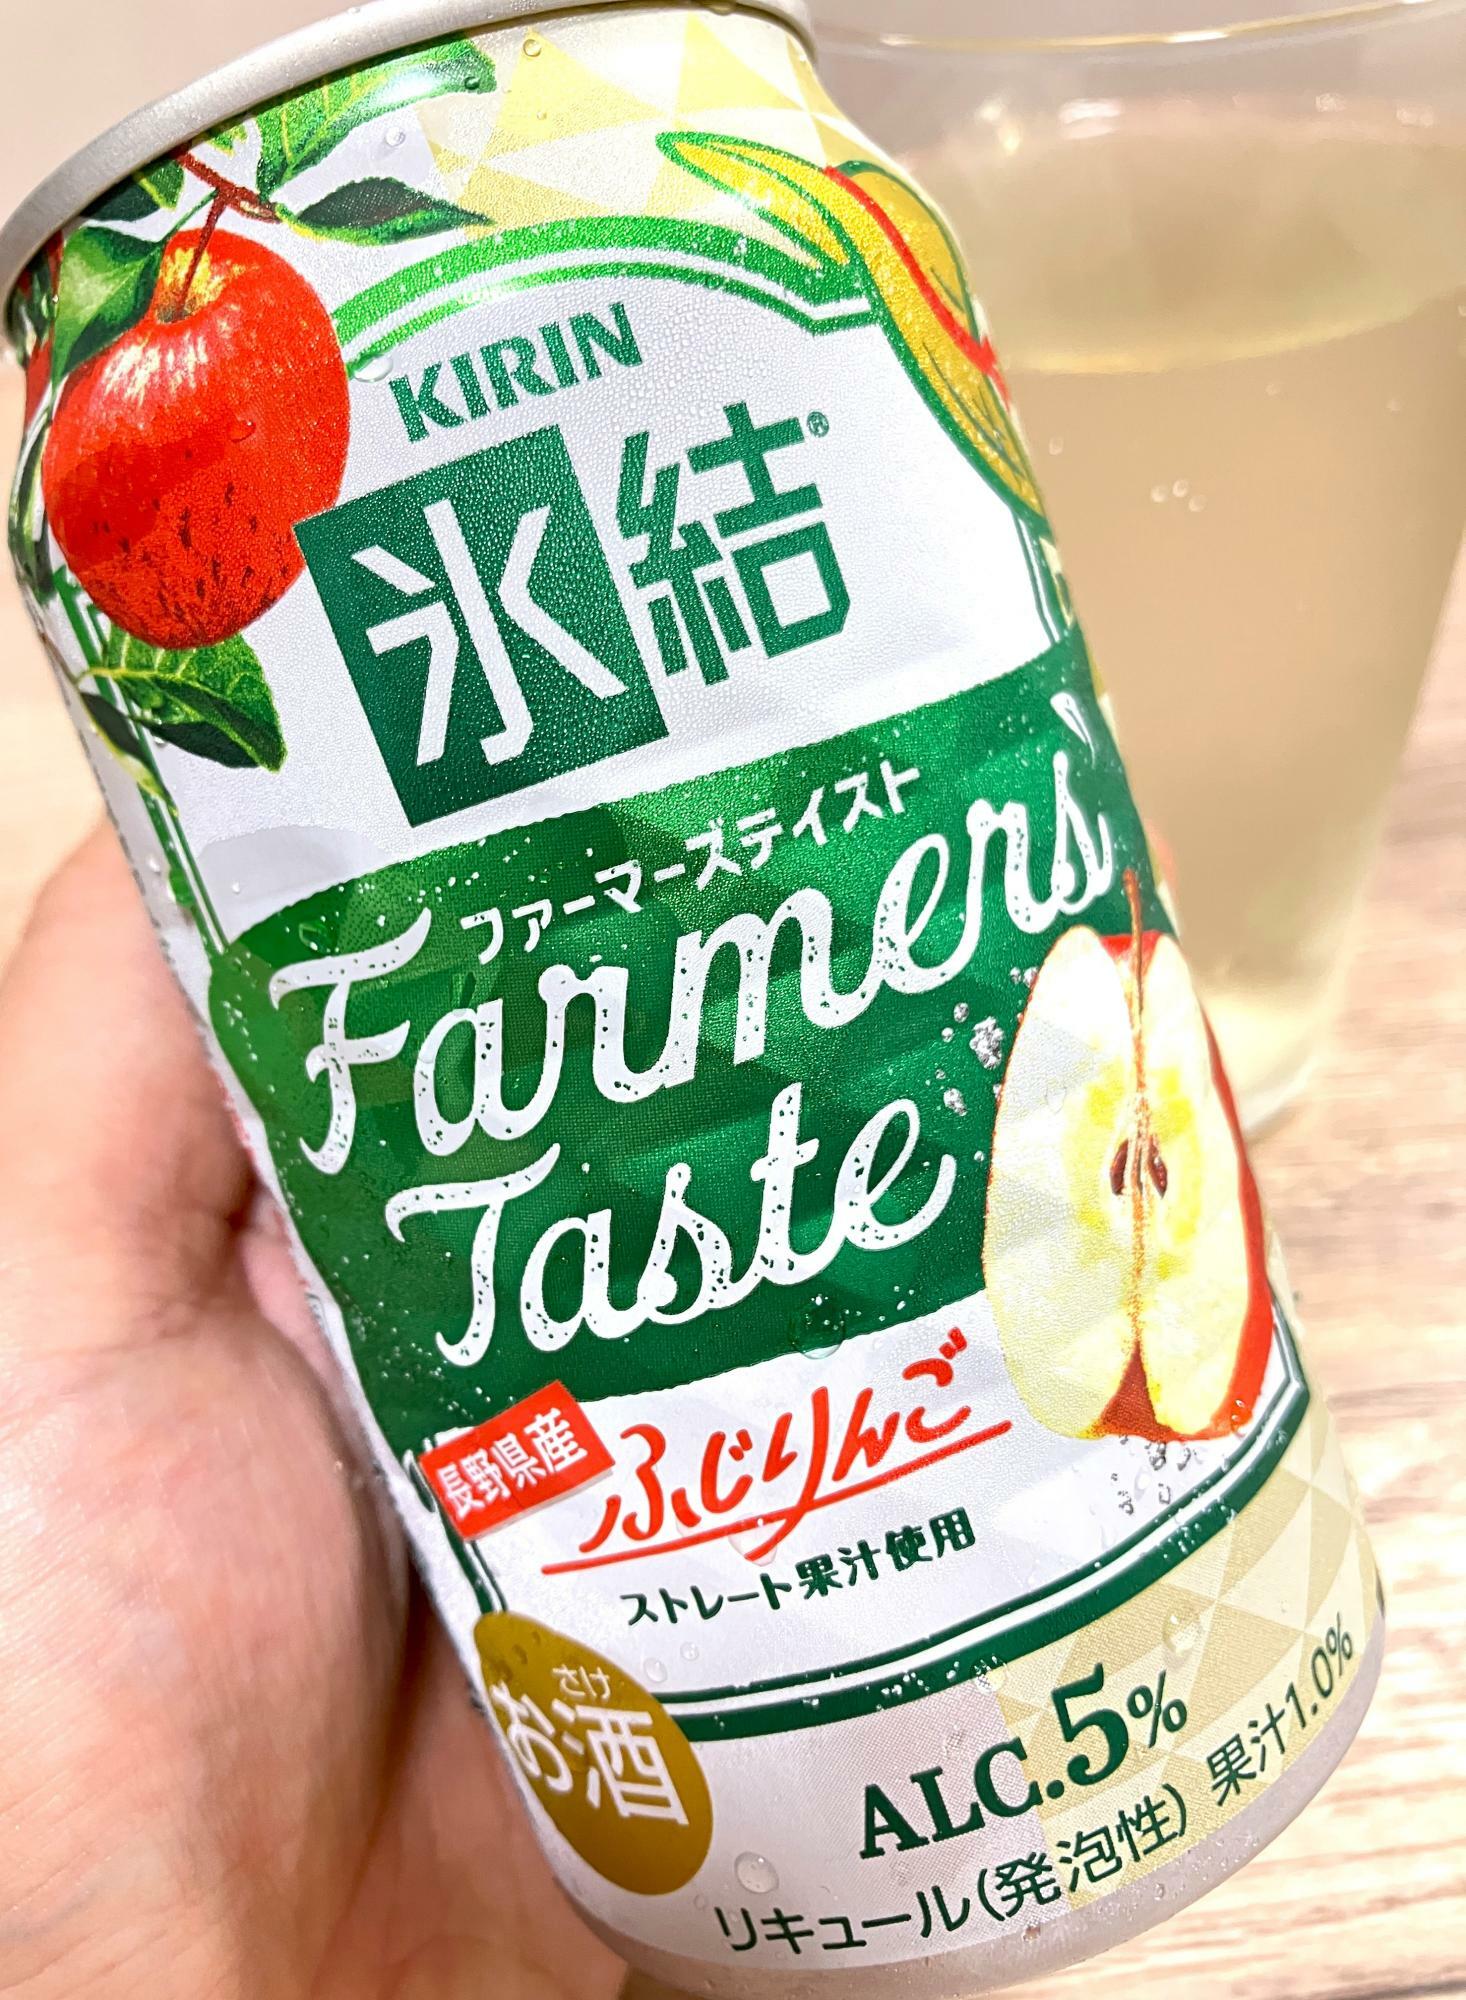 「長野県産ふじりんご」のストレート果汁を使用したチューハイ